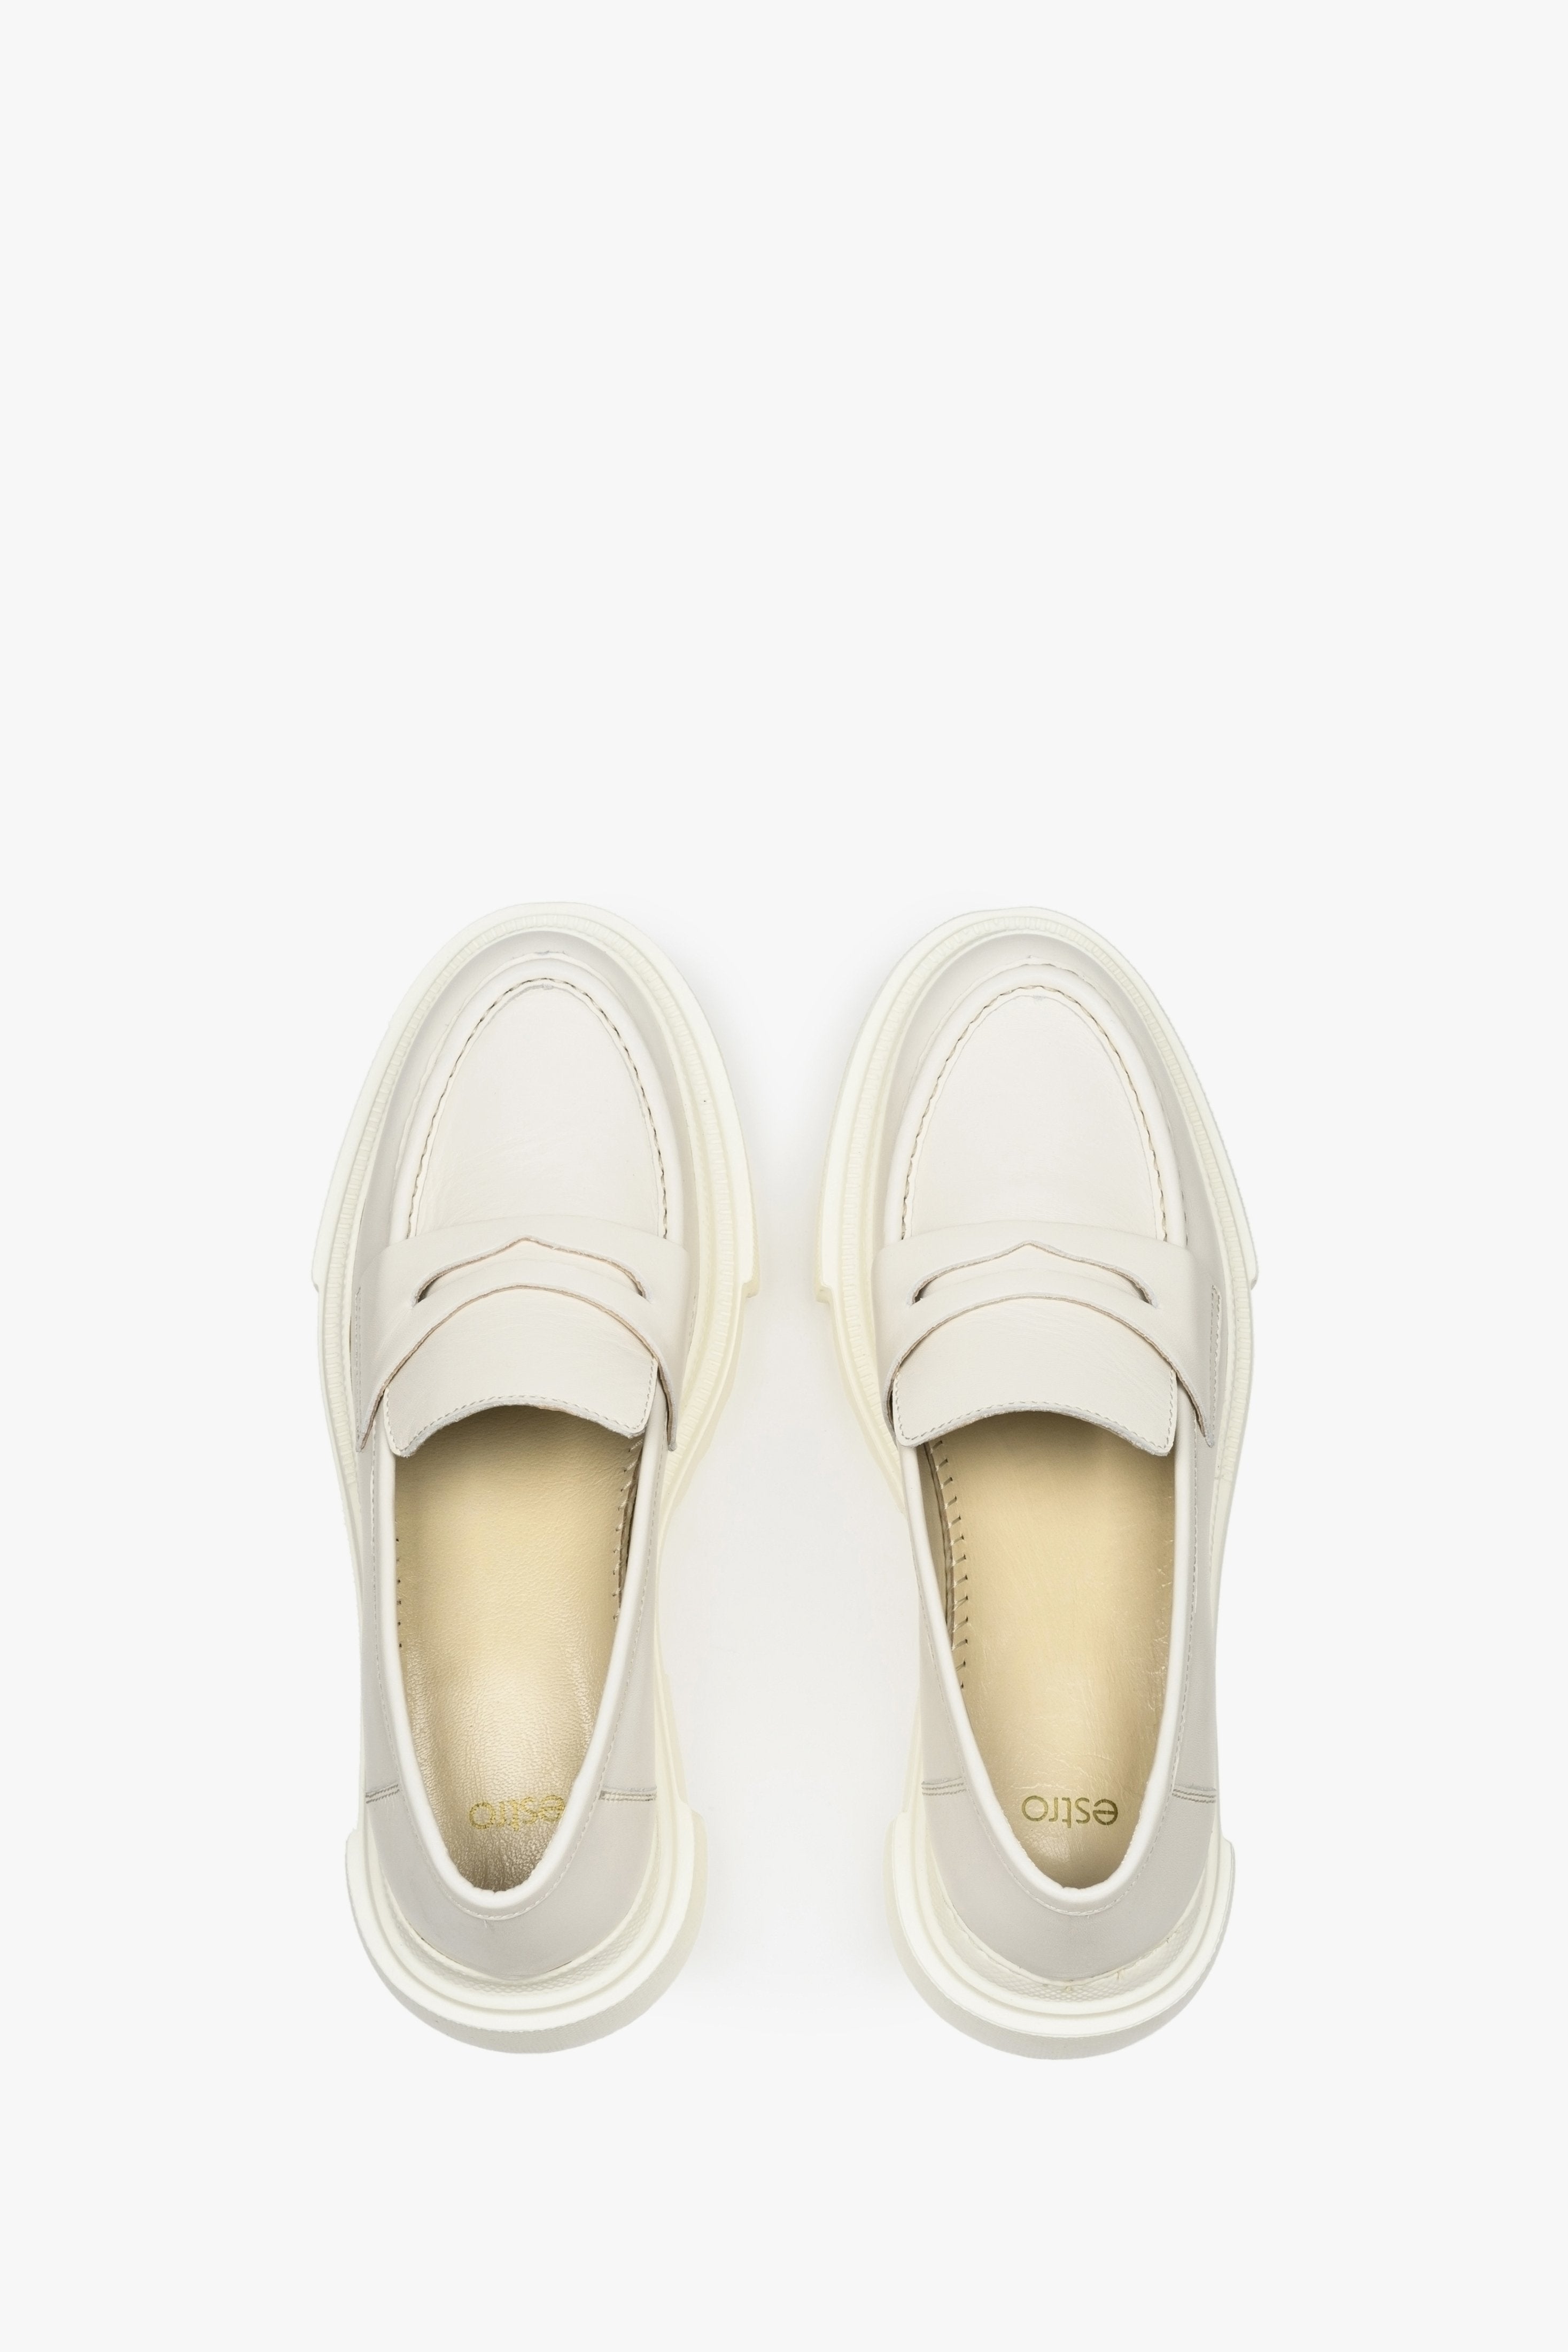 Damskie loafersy w kolorze białym marki Estro na wysokiej podeszwie.